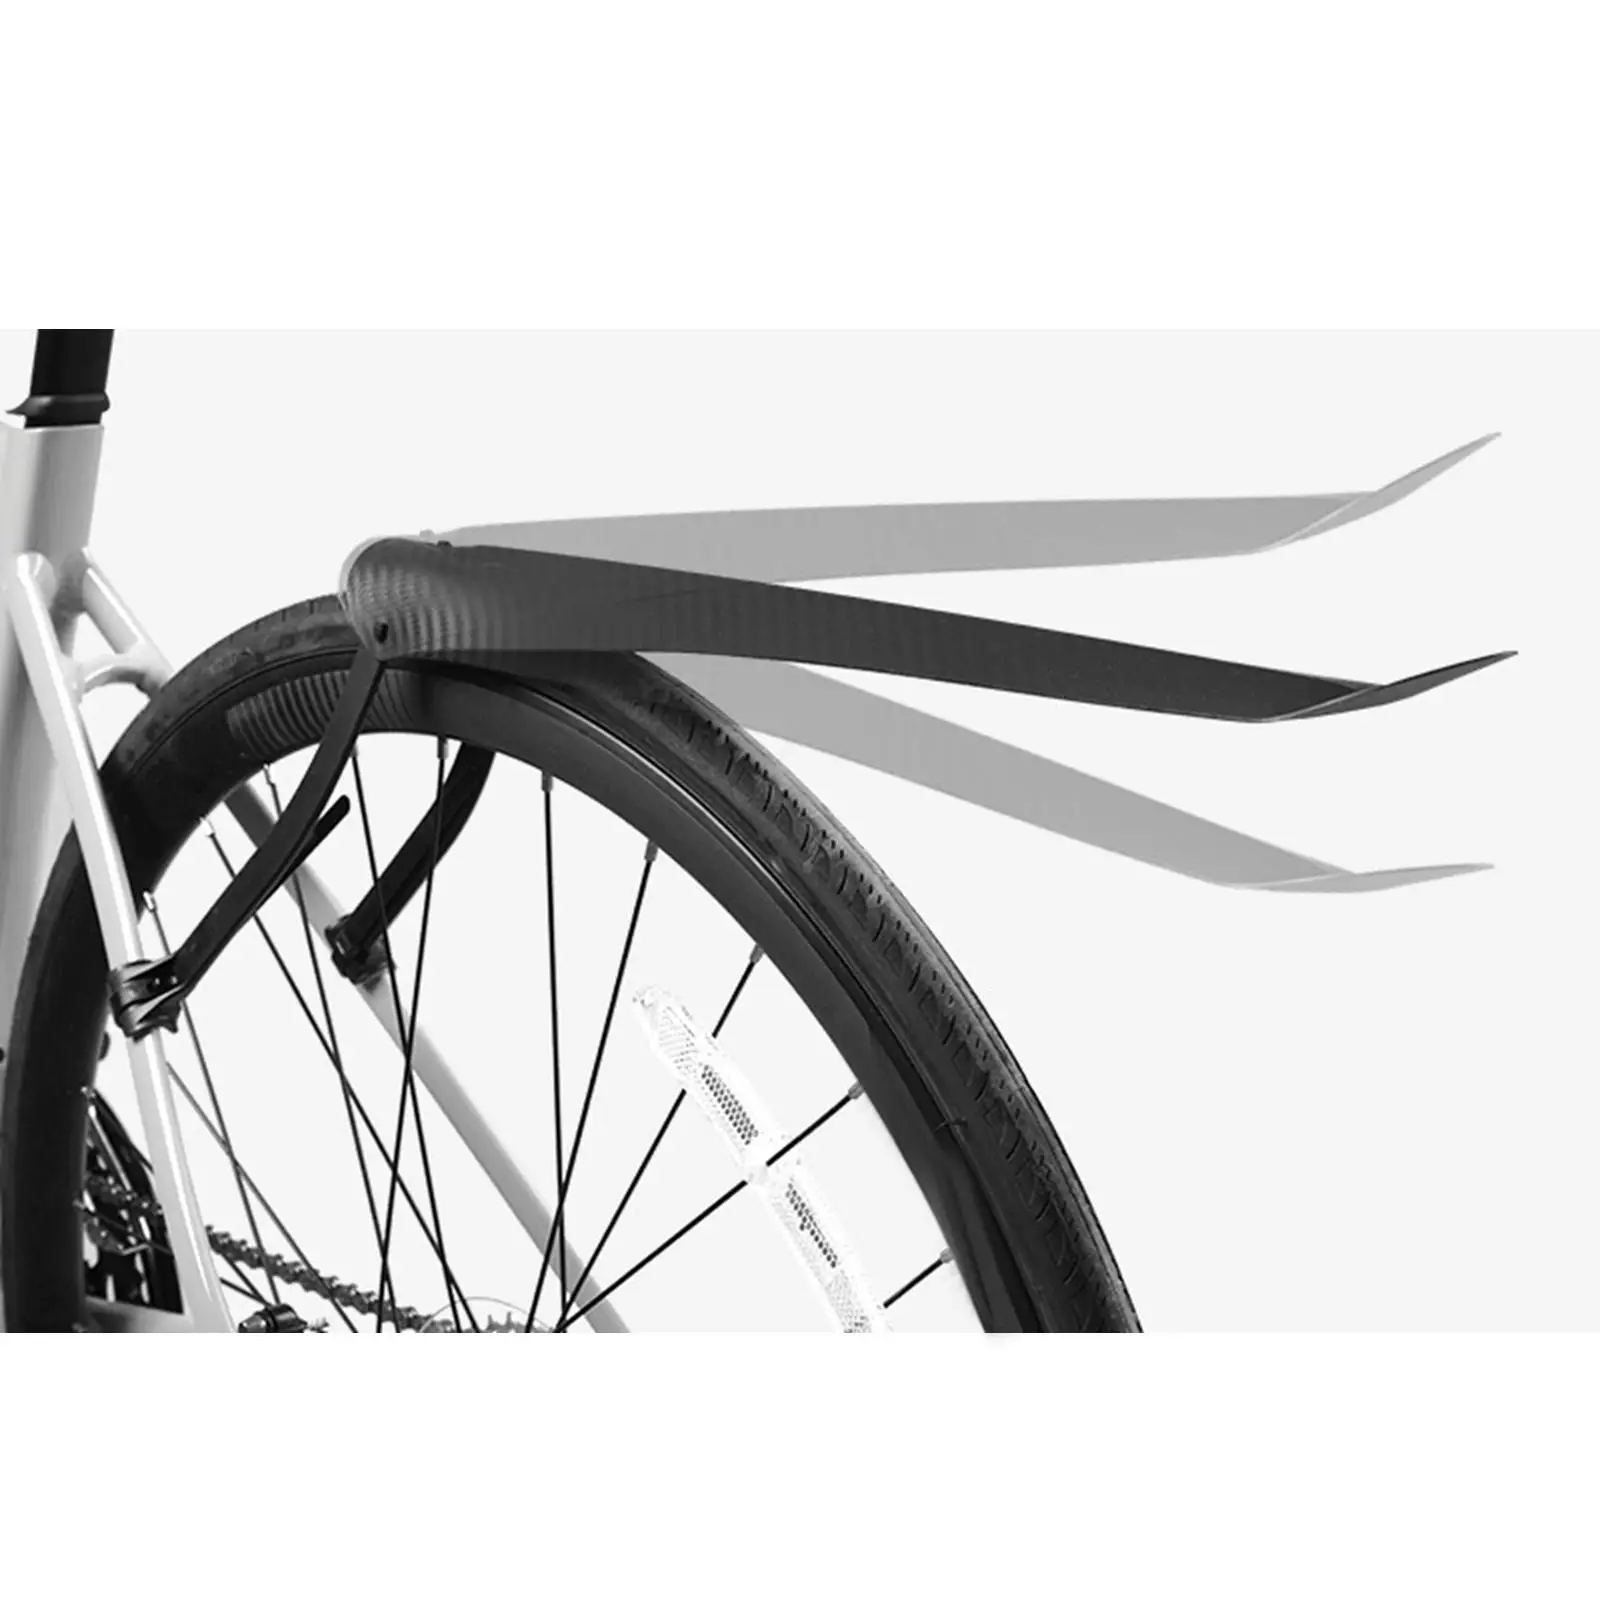 Брызговик для горного велосипеда, сверхлегкий, удлиняющий, расширяющий заднюю часть портативного велосипеда от грязи Изображение 1 